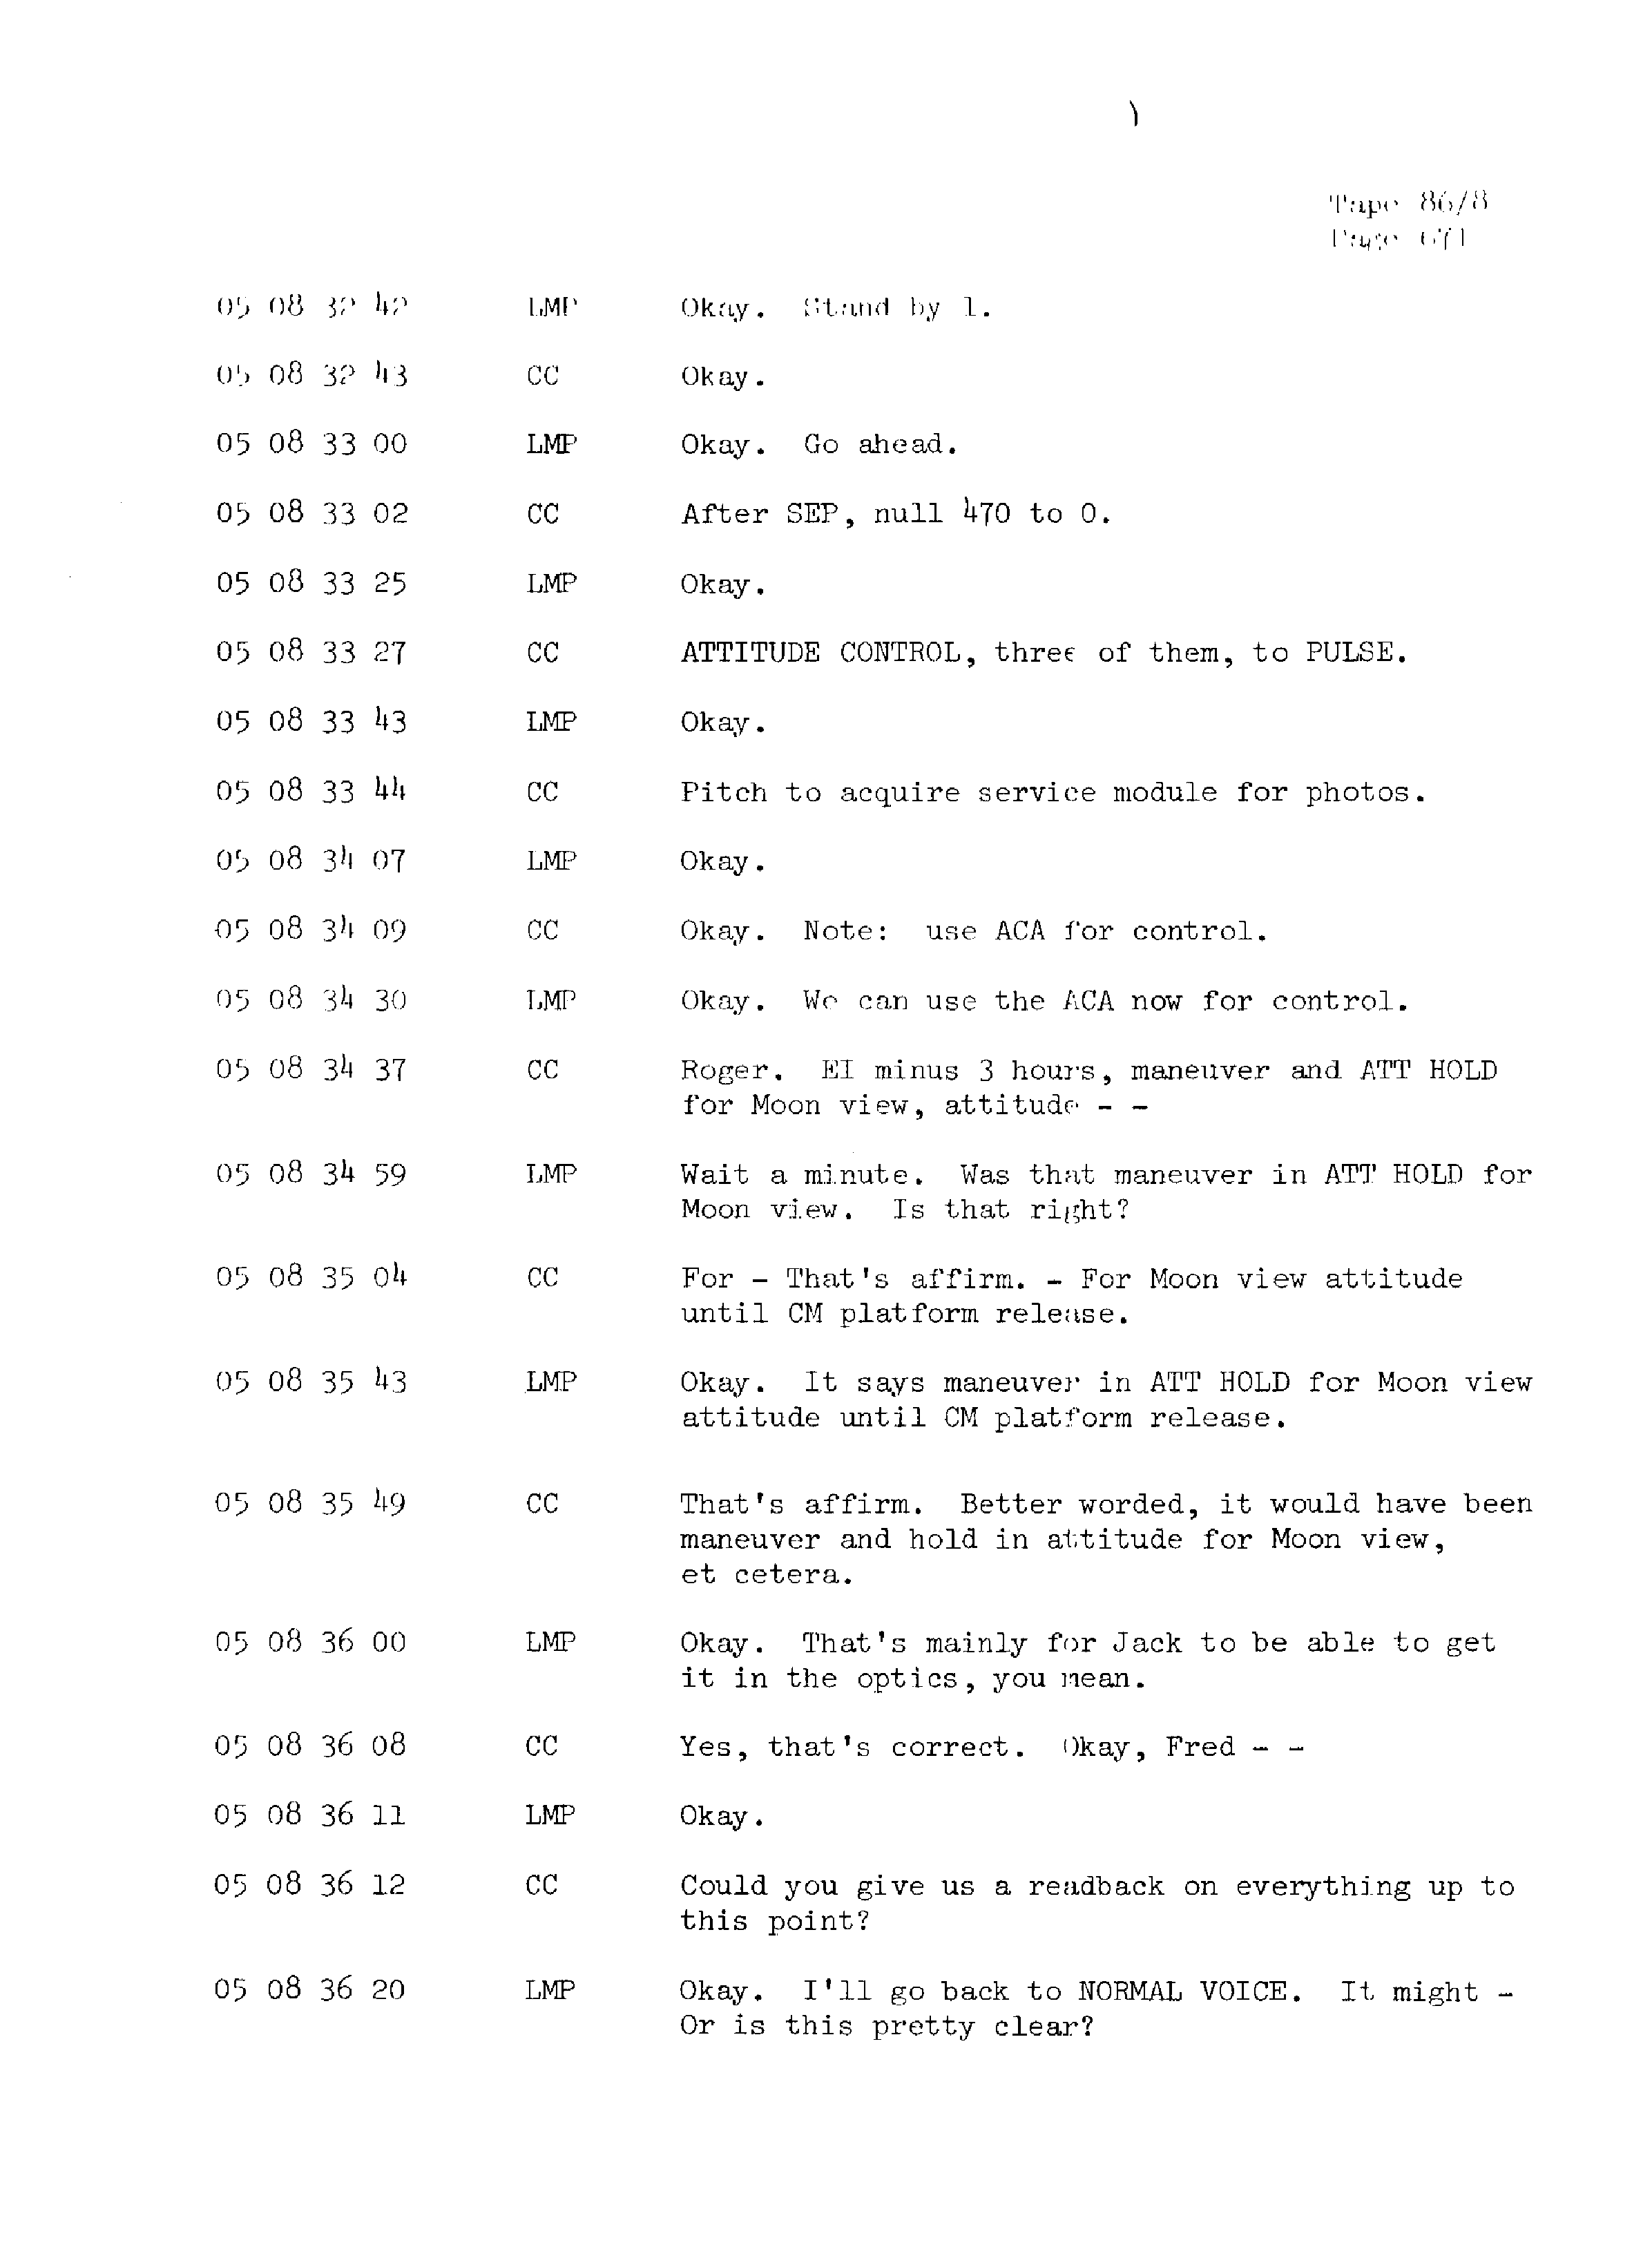 Page 678 of Apollo 13’s original transcript